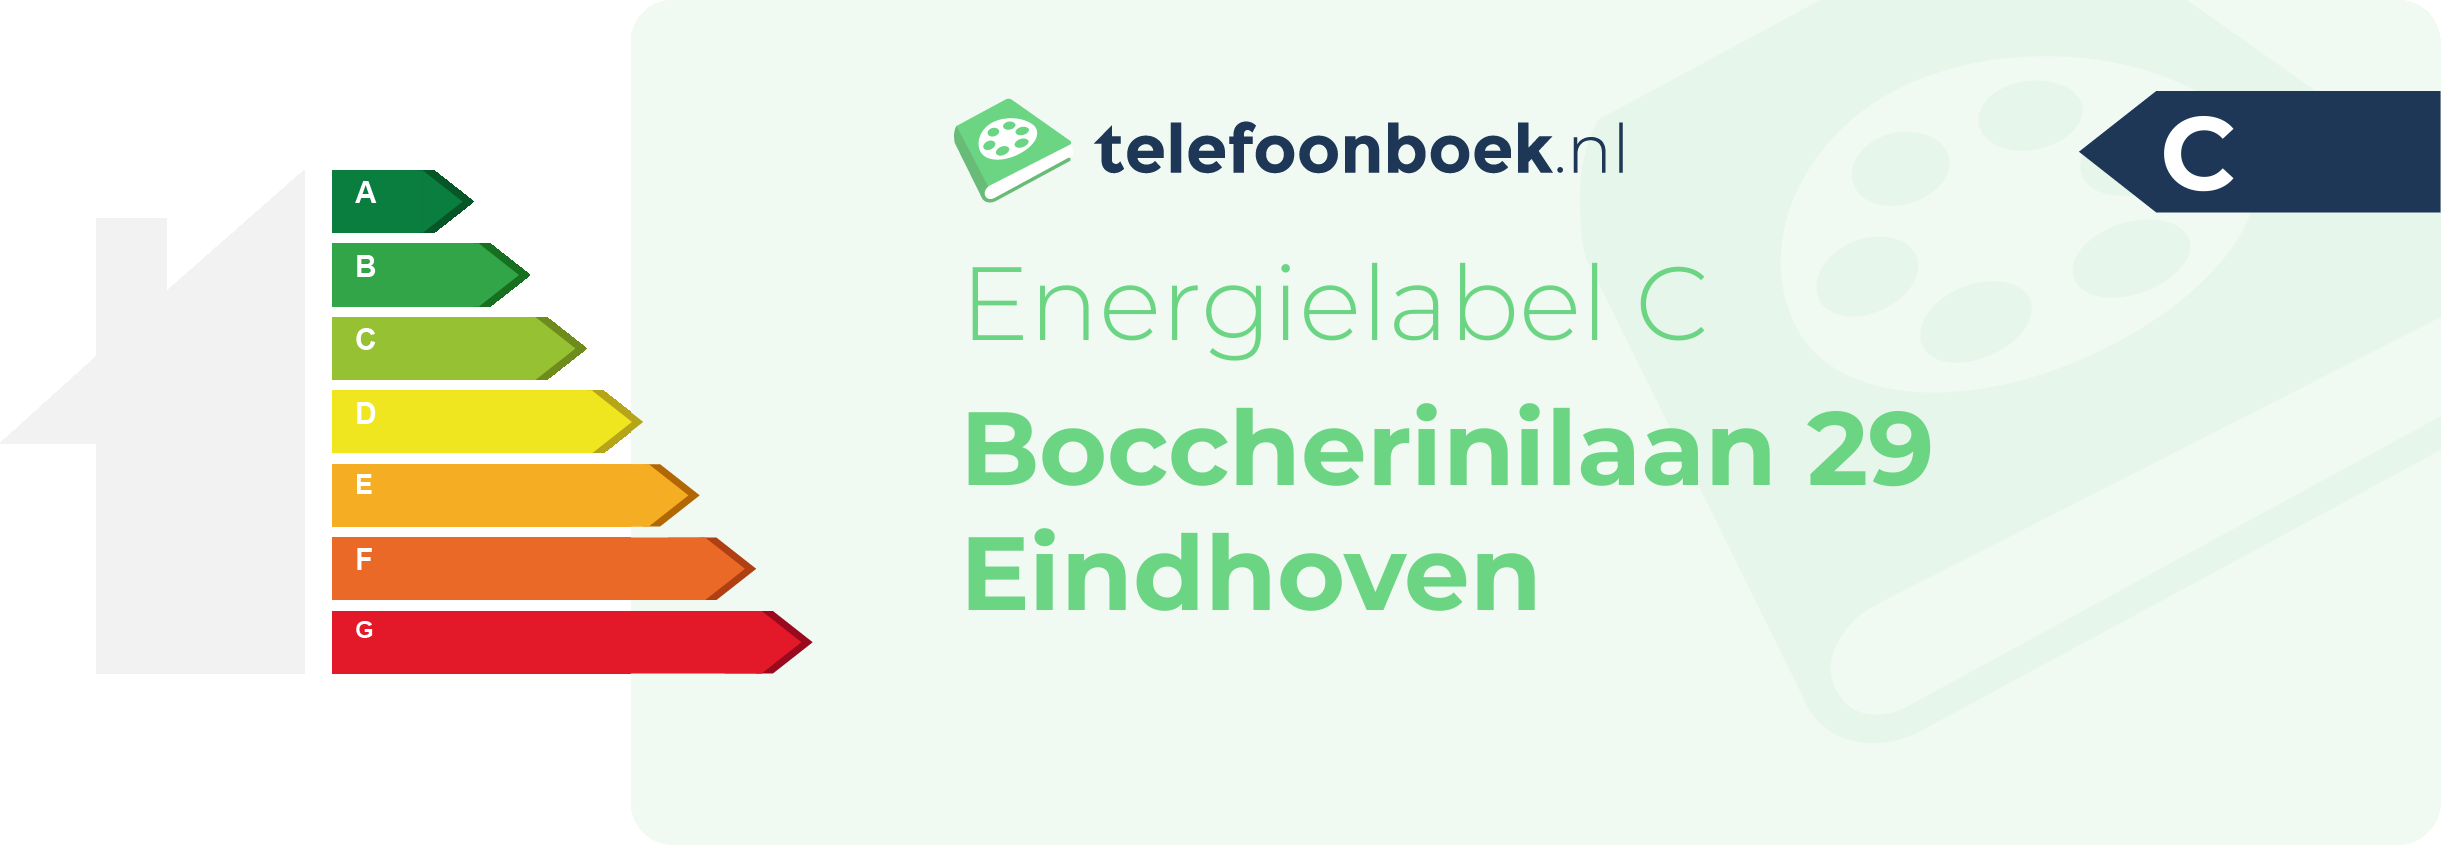 Energielabel Boccherinilaan 29 Eindhoven